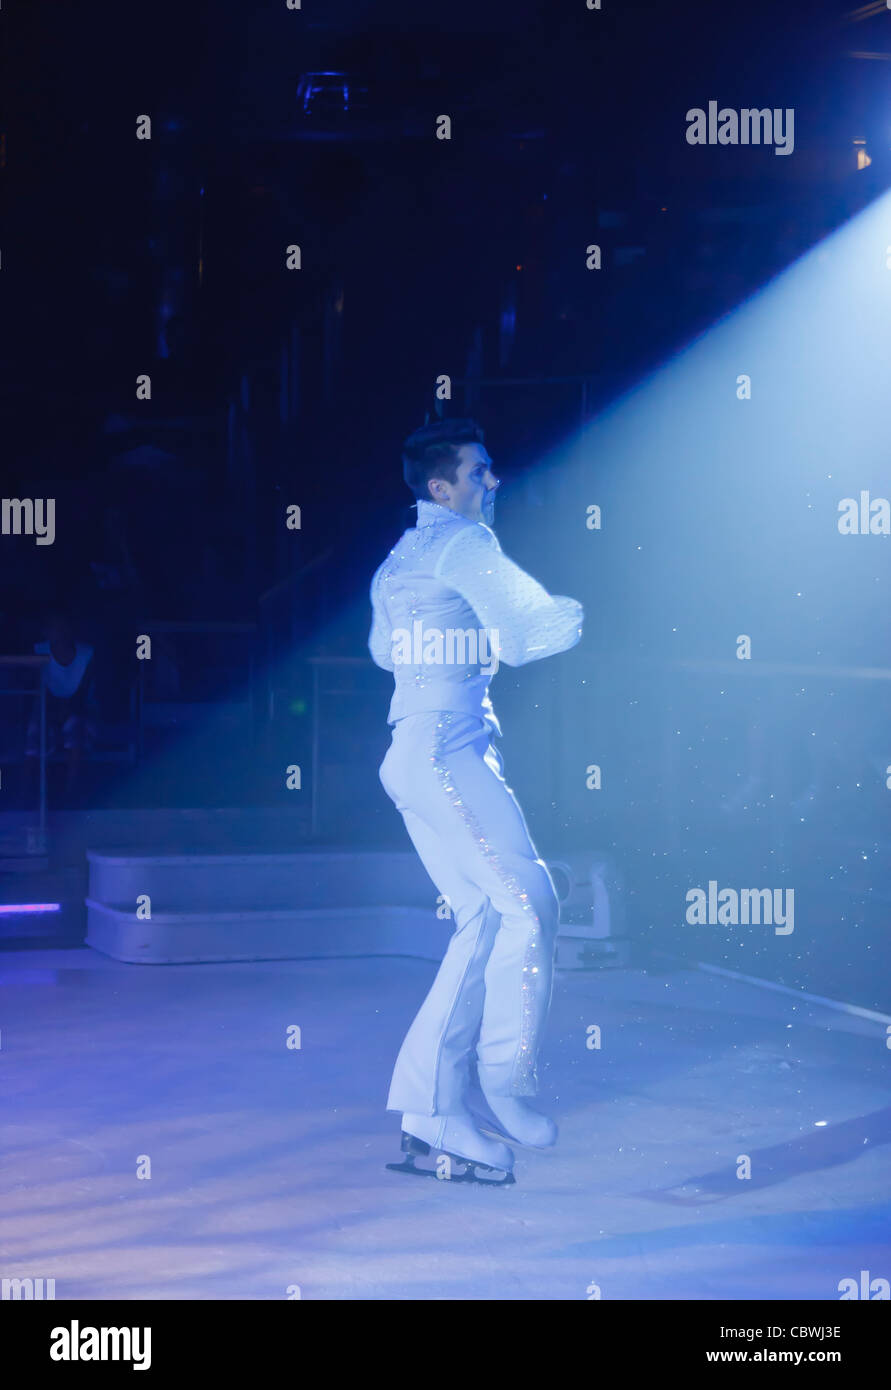 Ein Eis-Skater unter Blaulicht im weißen outfit Stockfoto